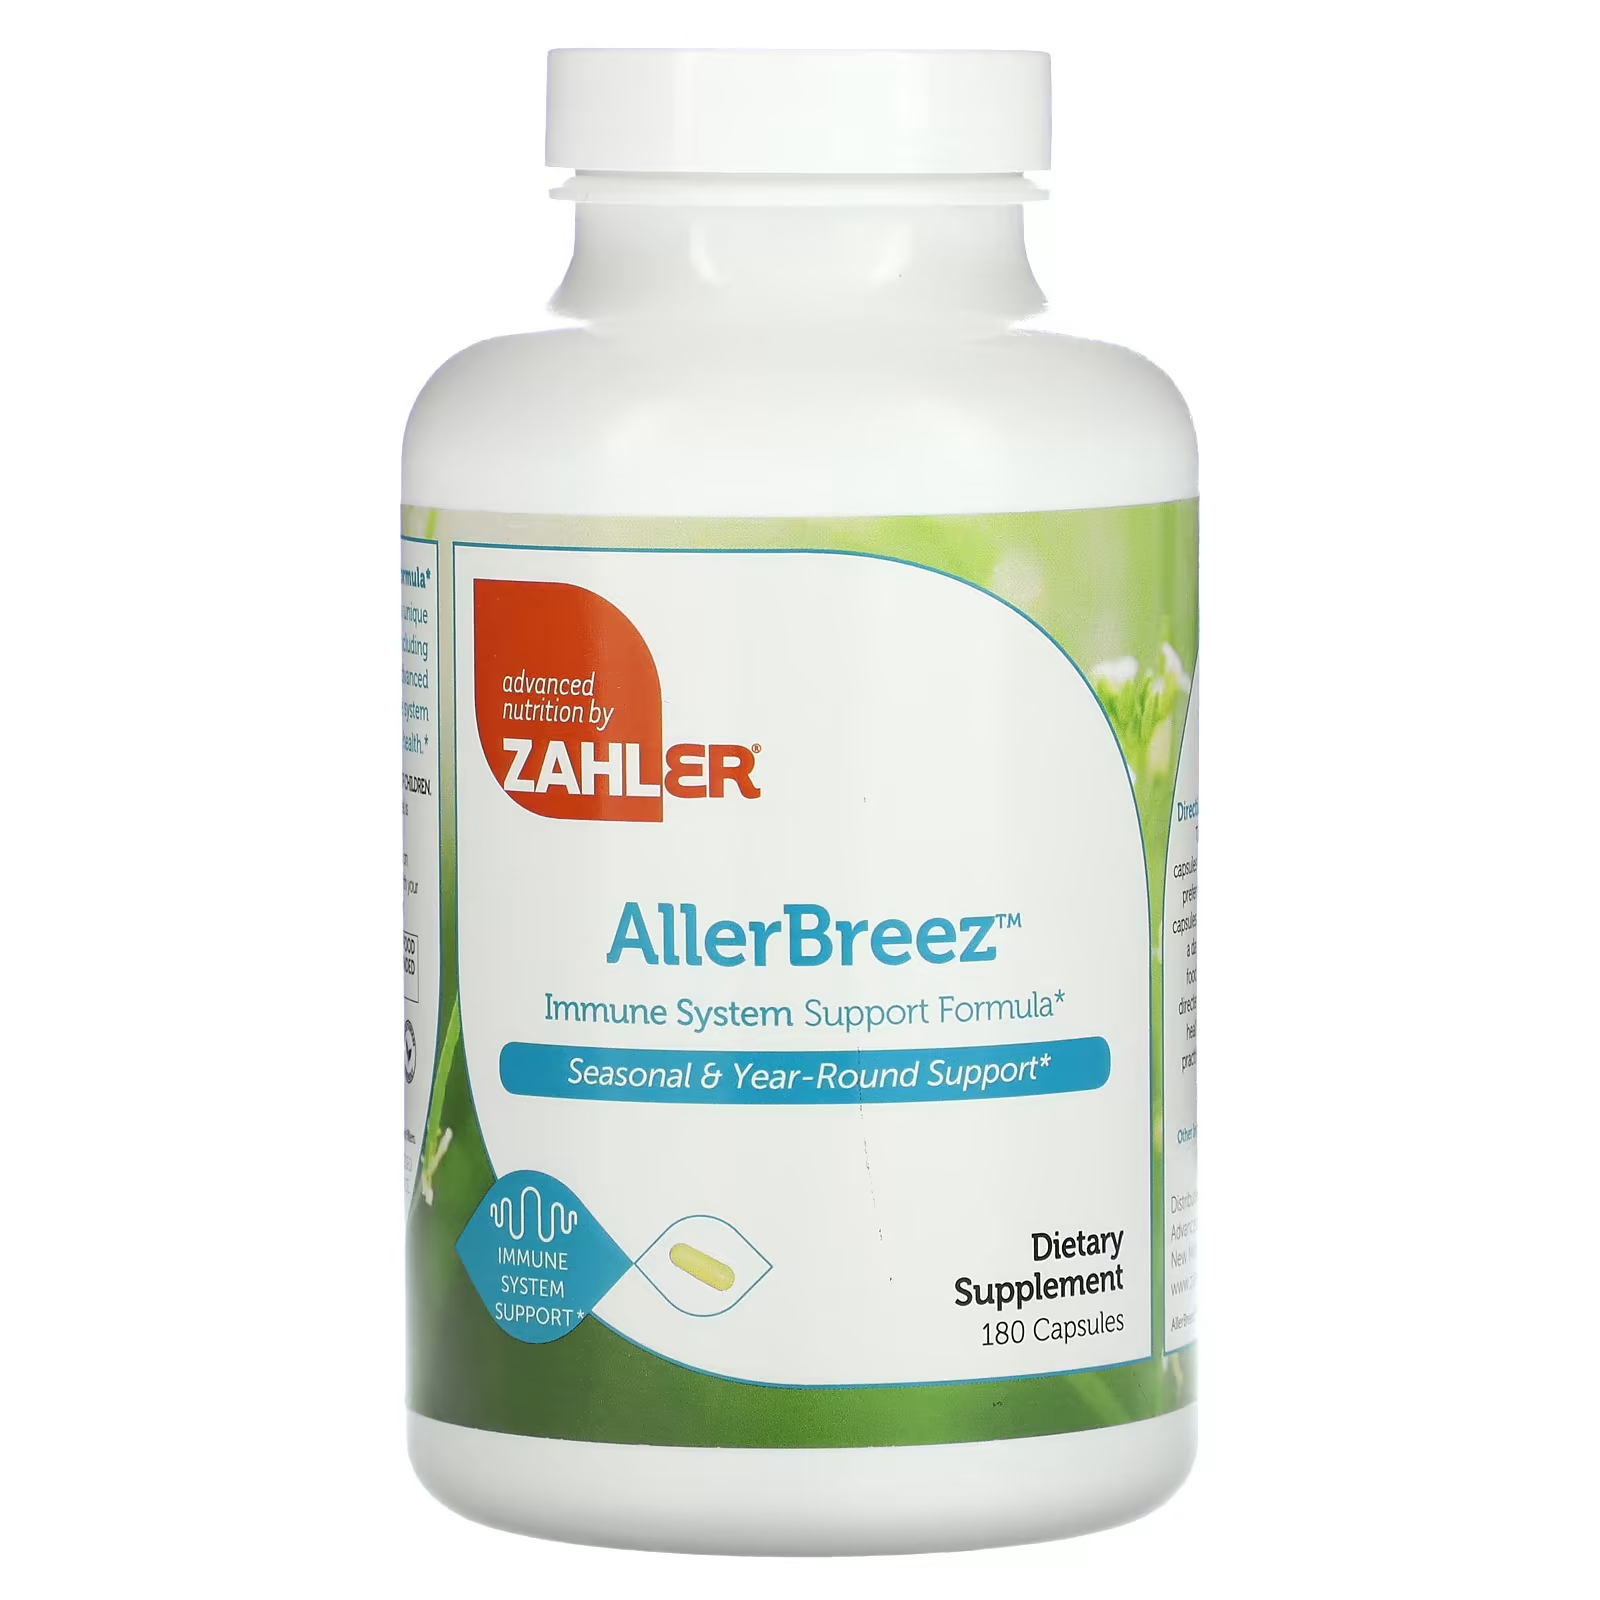 Пищевая добавка Zahler AllergBreeze формула поддержки иммунной системы, 180 капсул пищевая добавка zahler 120 80 формула поддержки сердечно сосудистой системы 60 капсул